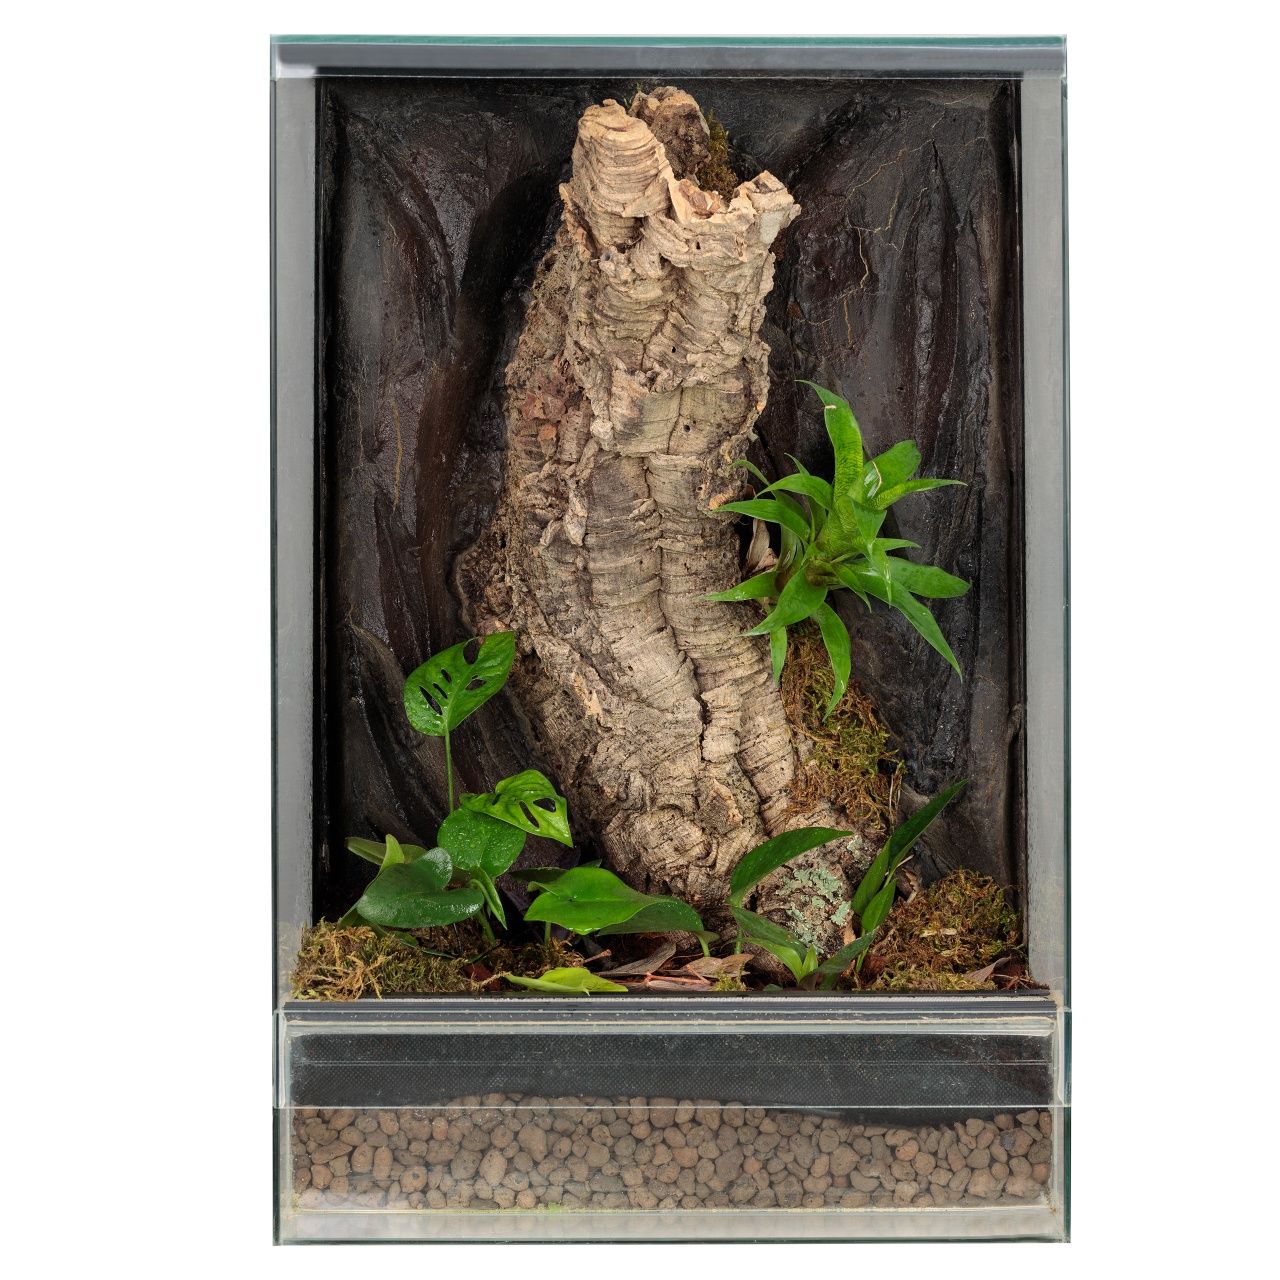 Wiwarium terrarium paludarium